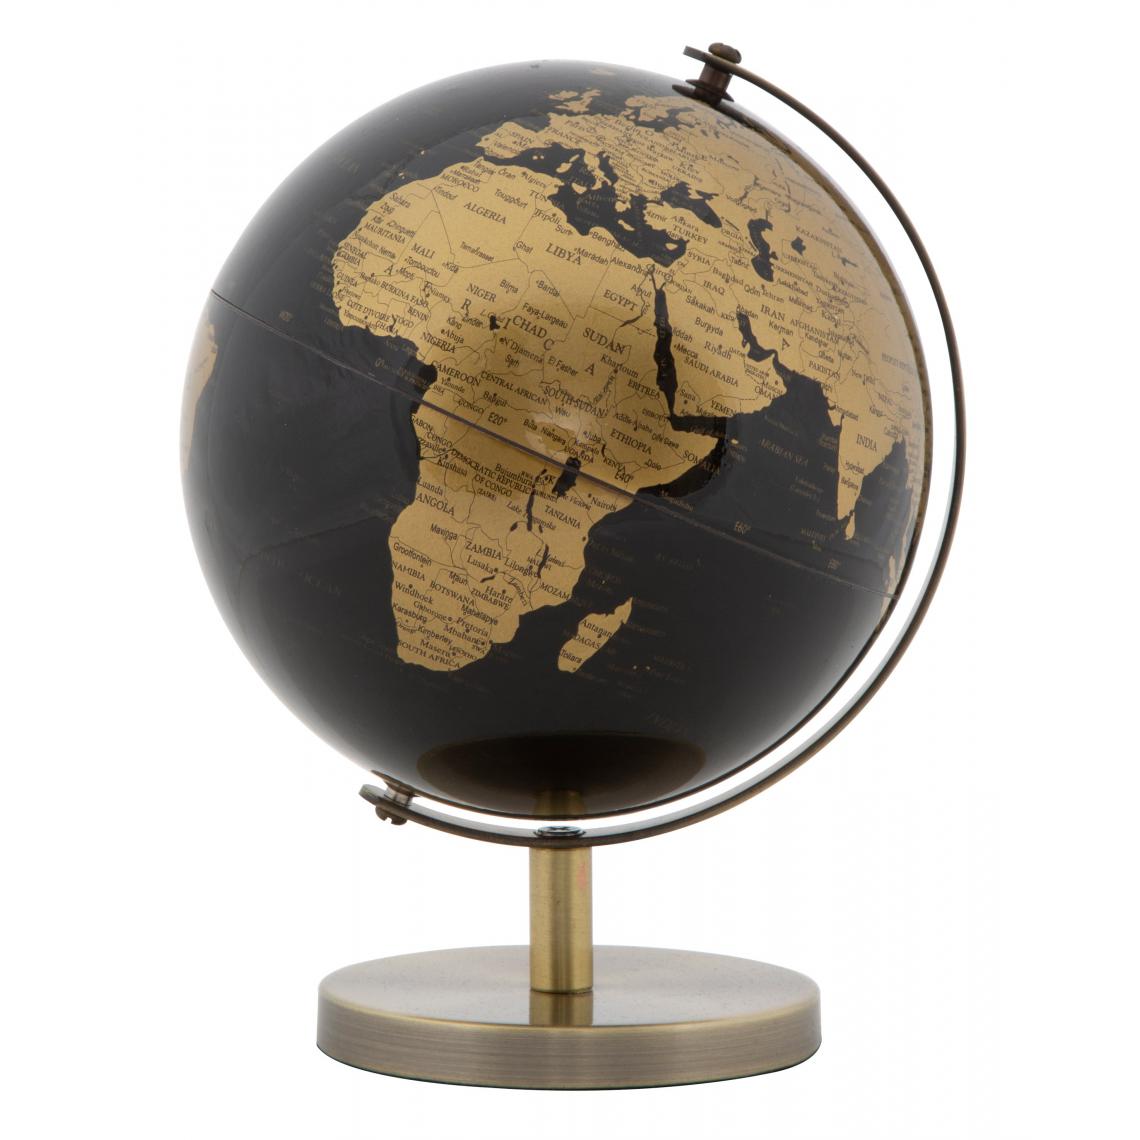 Alter - Globe décoratif, en matière plastique, avec base en métal, couleur noire, Dimensions 13 x 17 x 13 cm - Objets déco